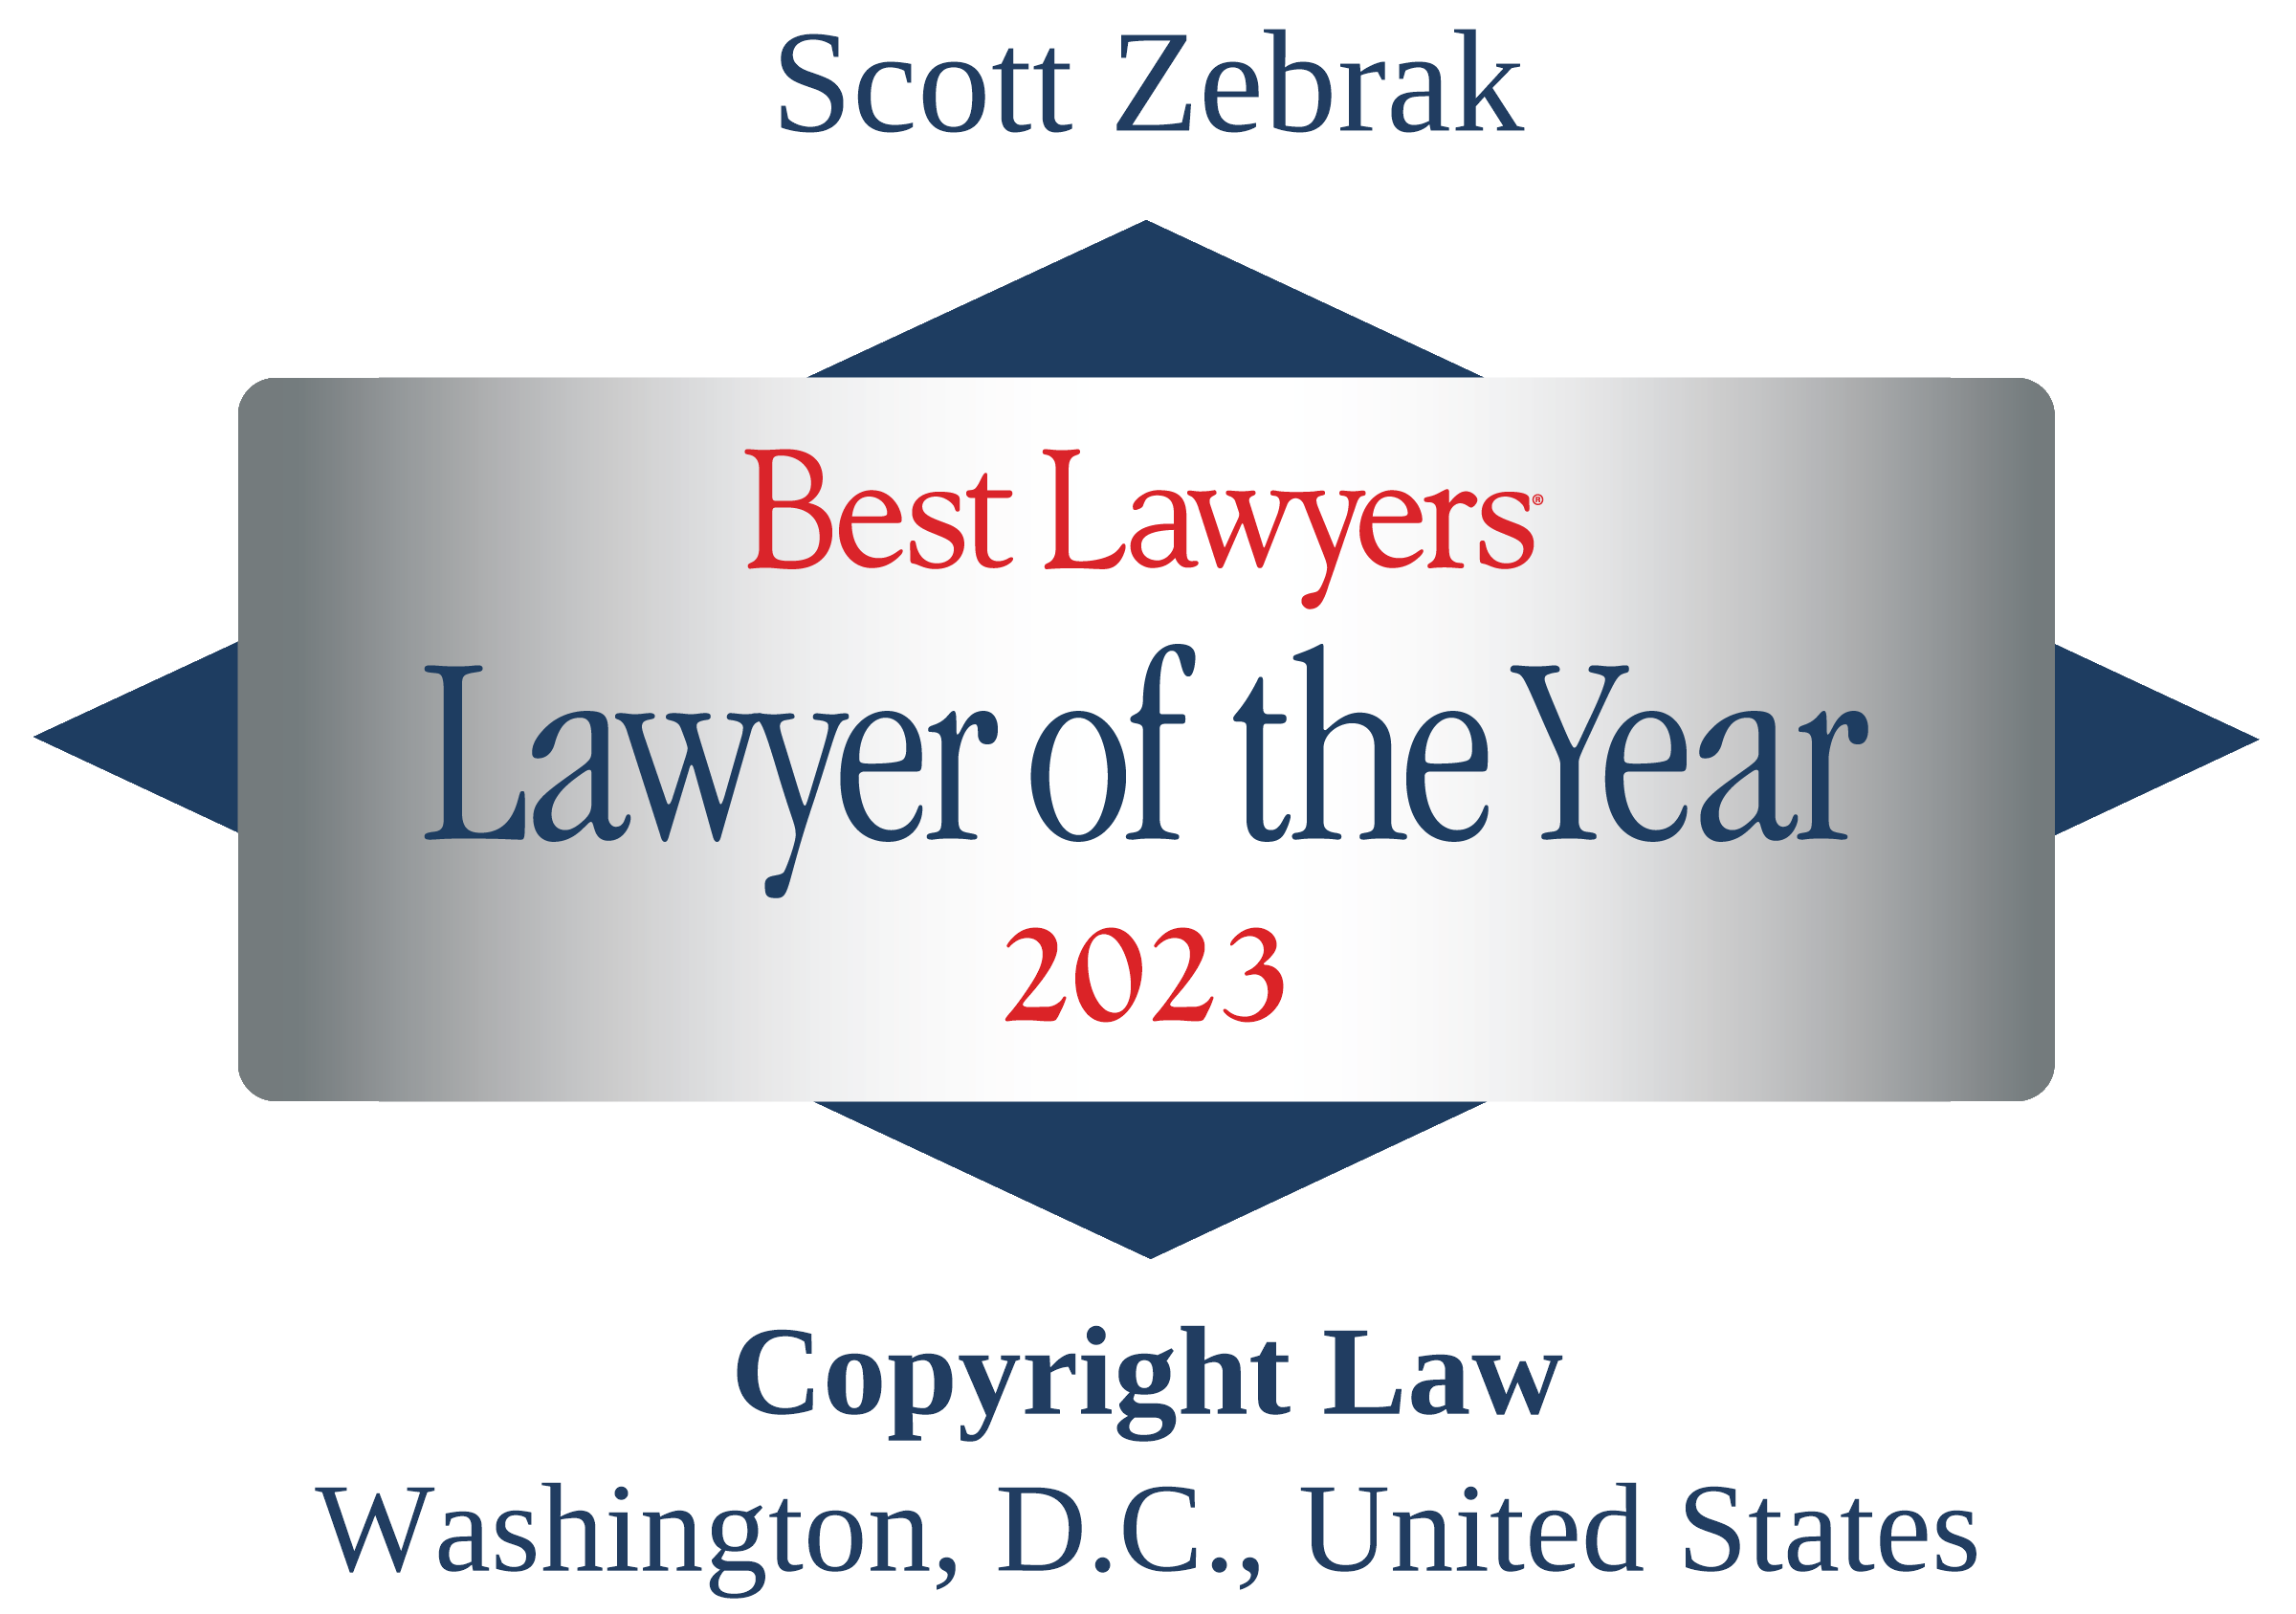 Best Lawyers - Scott Zebrak, O+Z, Lawyer of the Year 2023, Traditional Logo